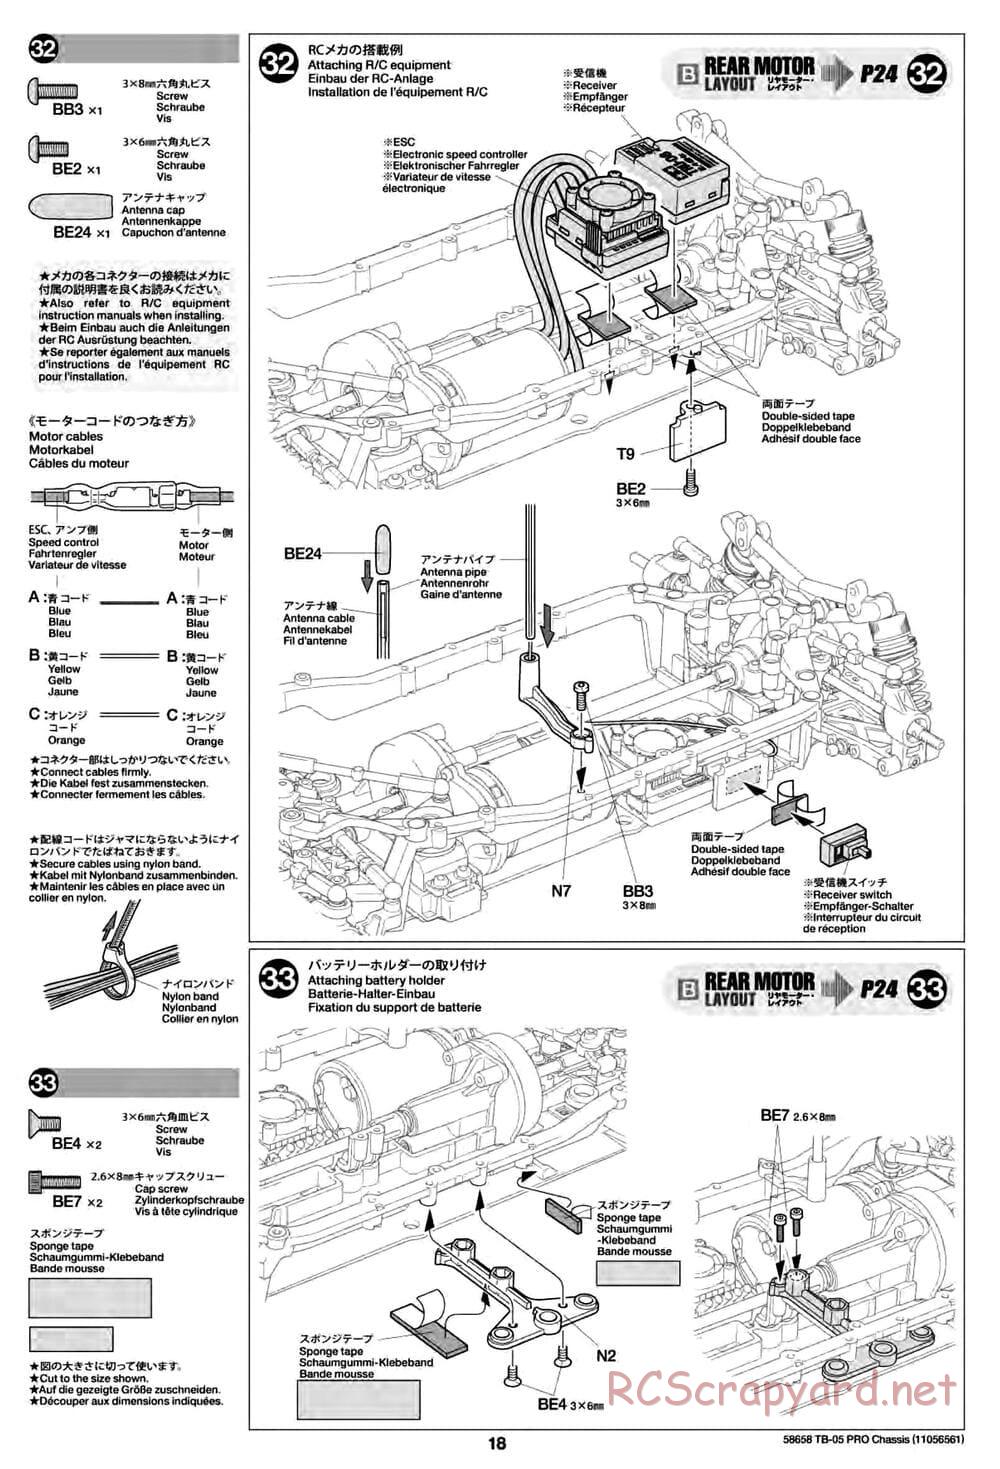 Tamiya - TB-05 Pro Chassis - Manual - Page 18